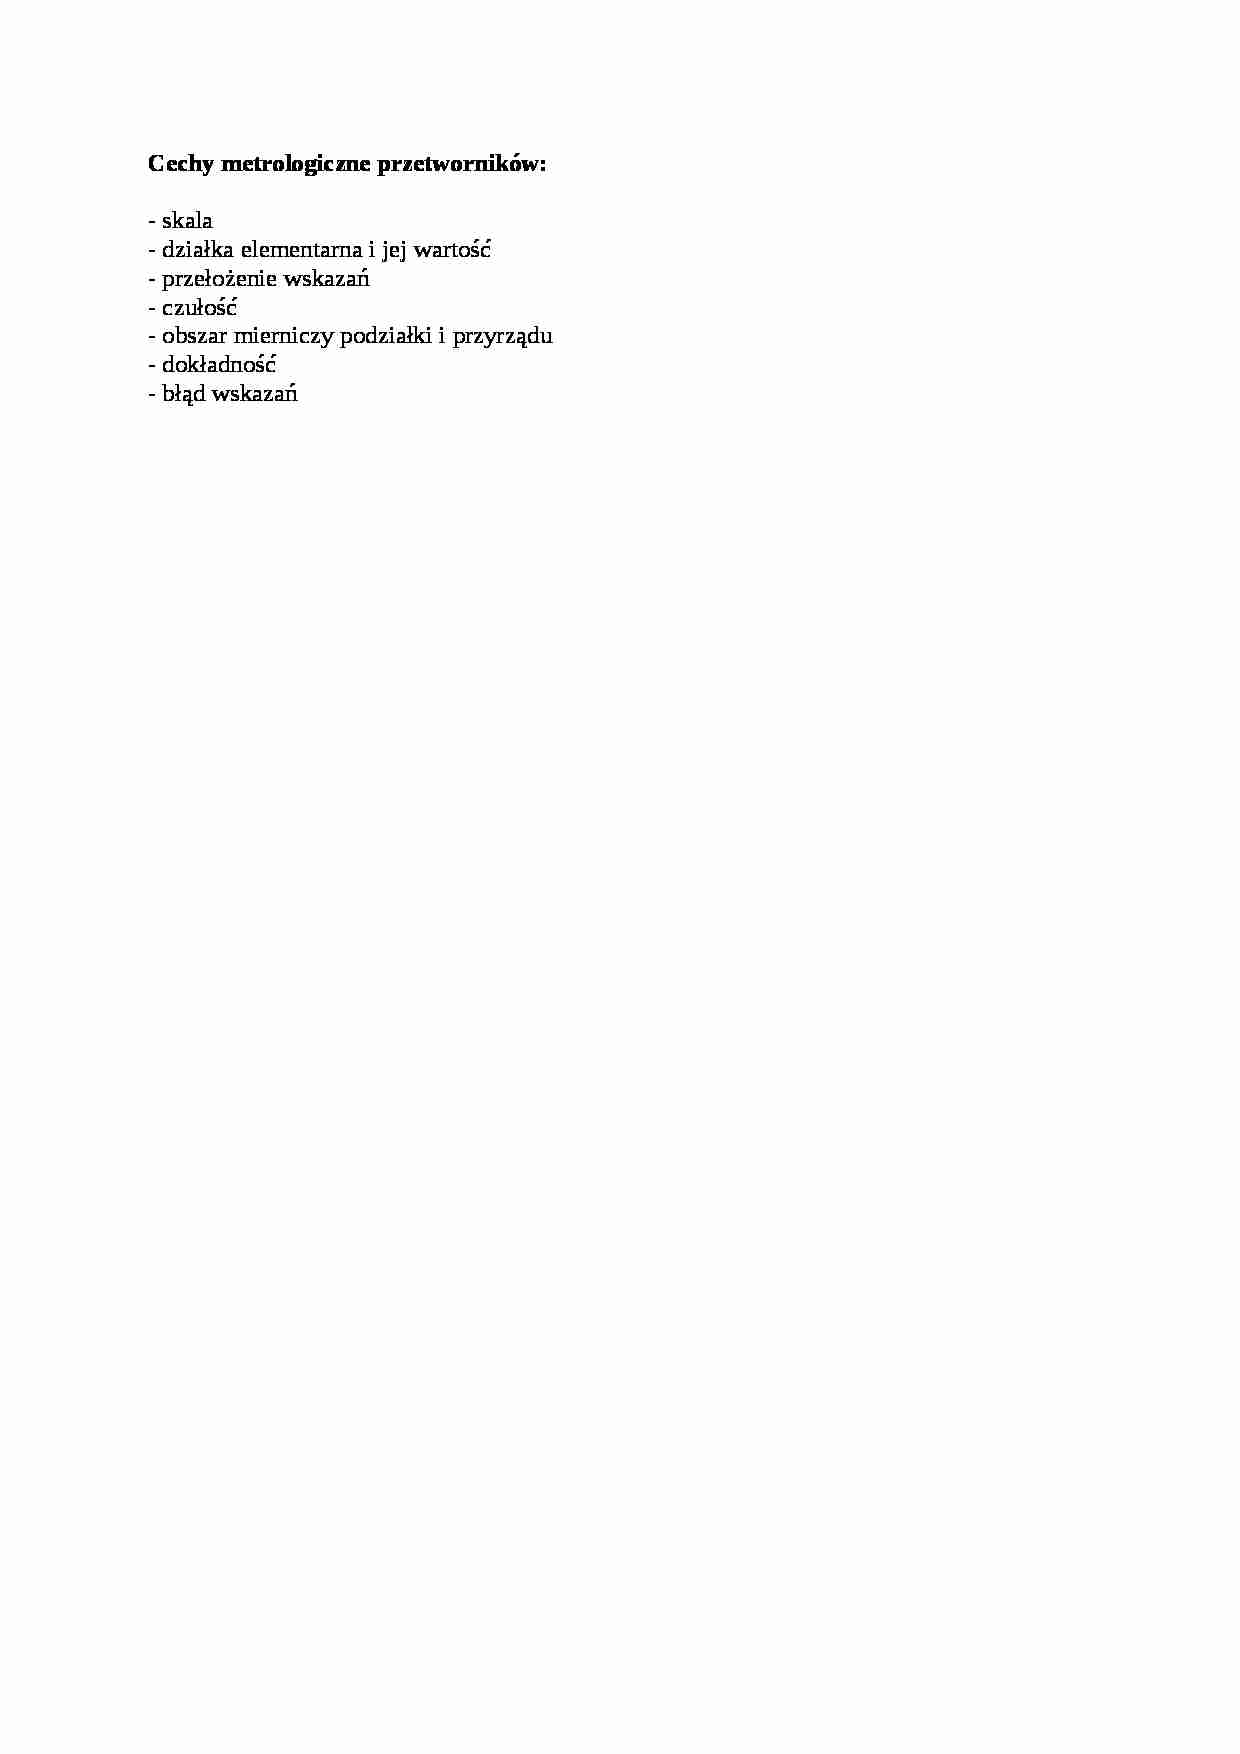 Cechy metrologiczne przetworników - opracowanie - strona 1